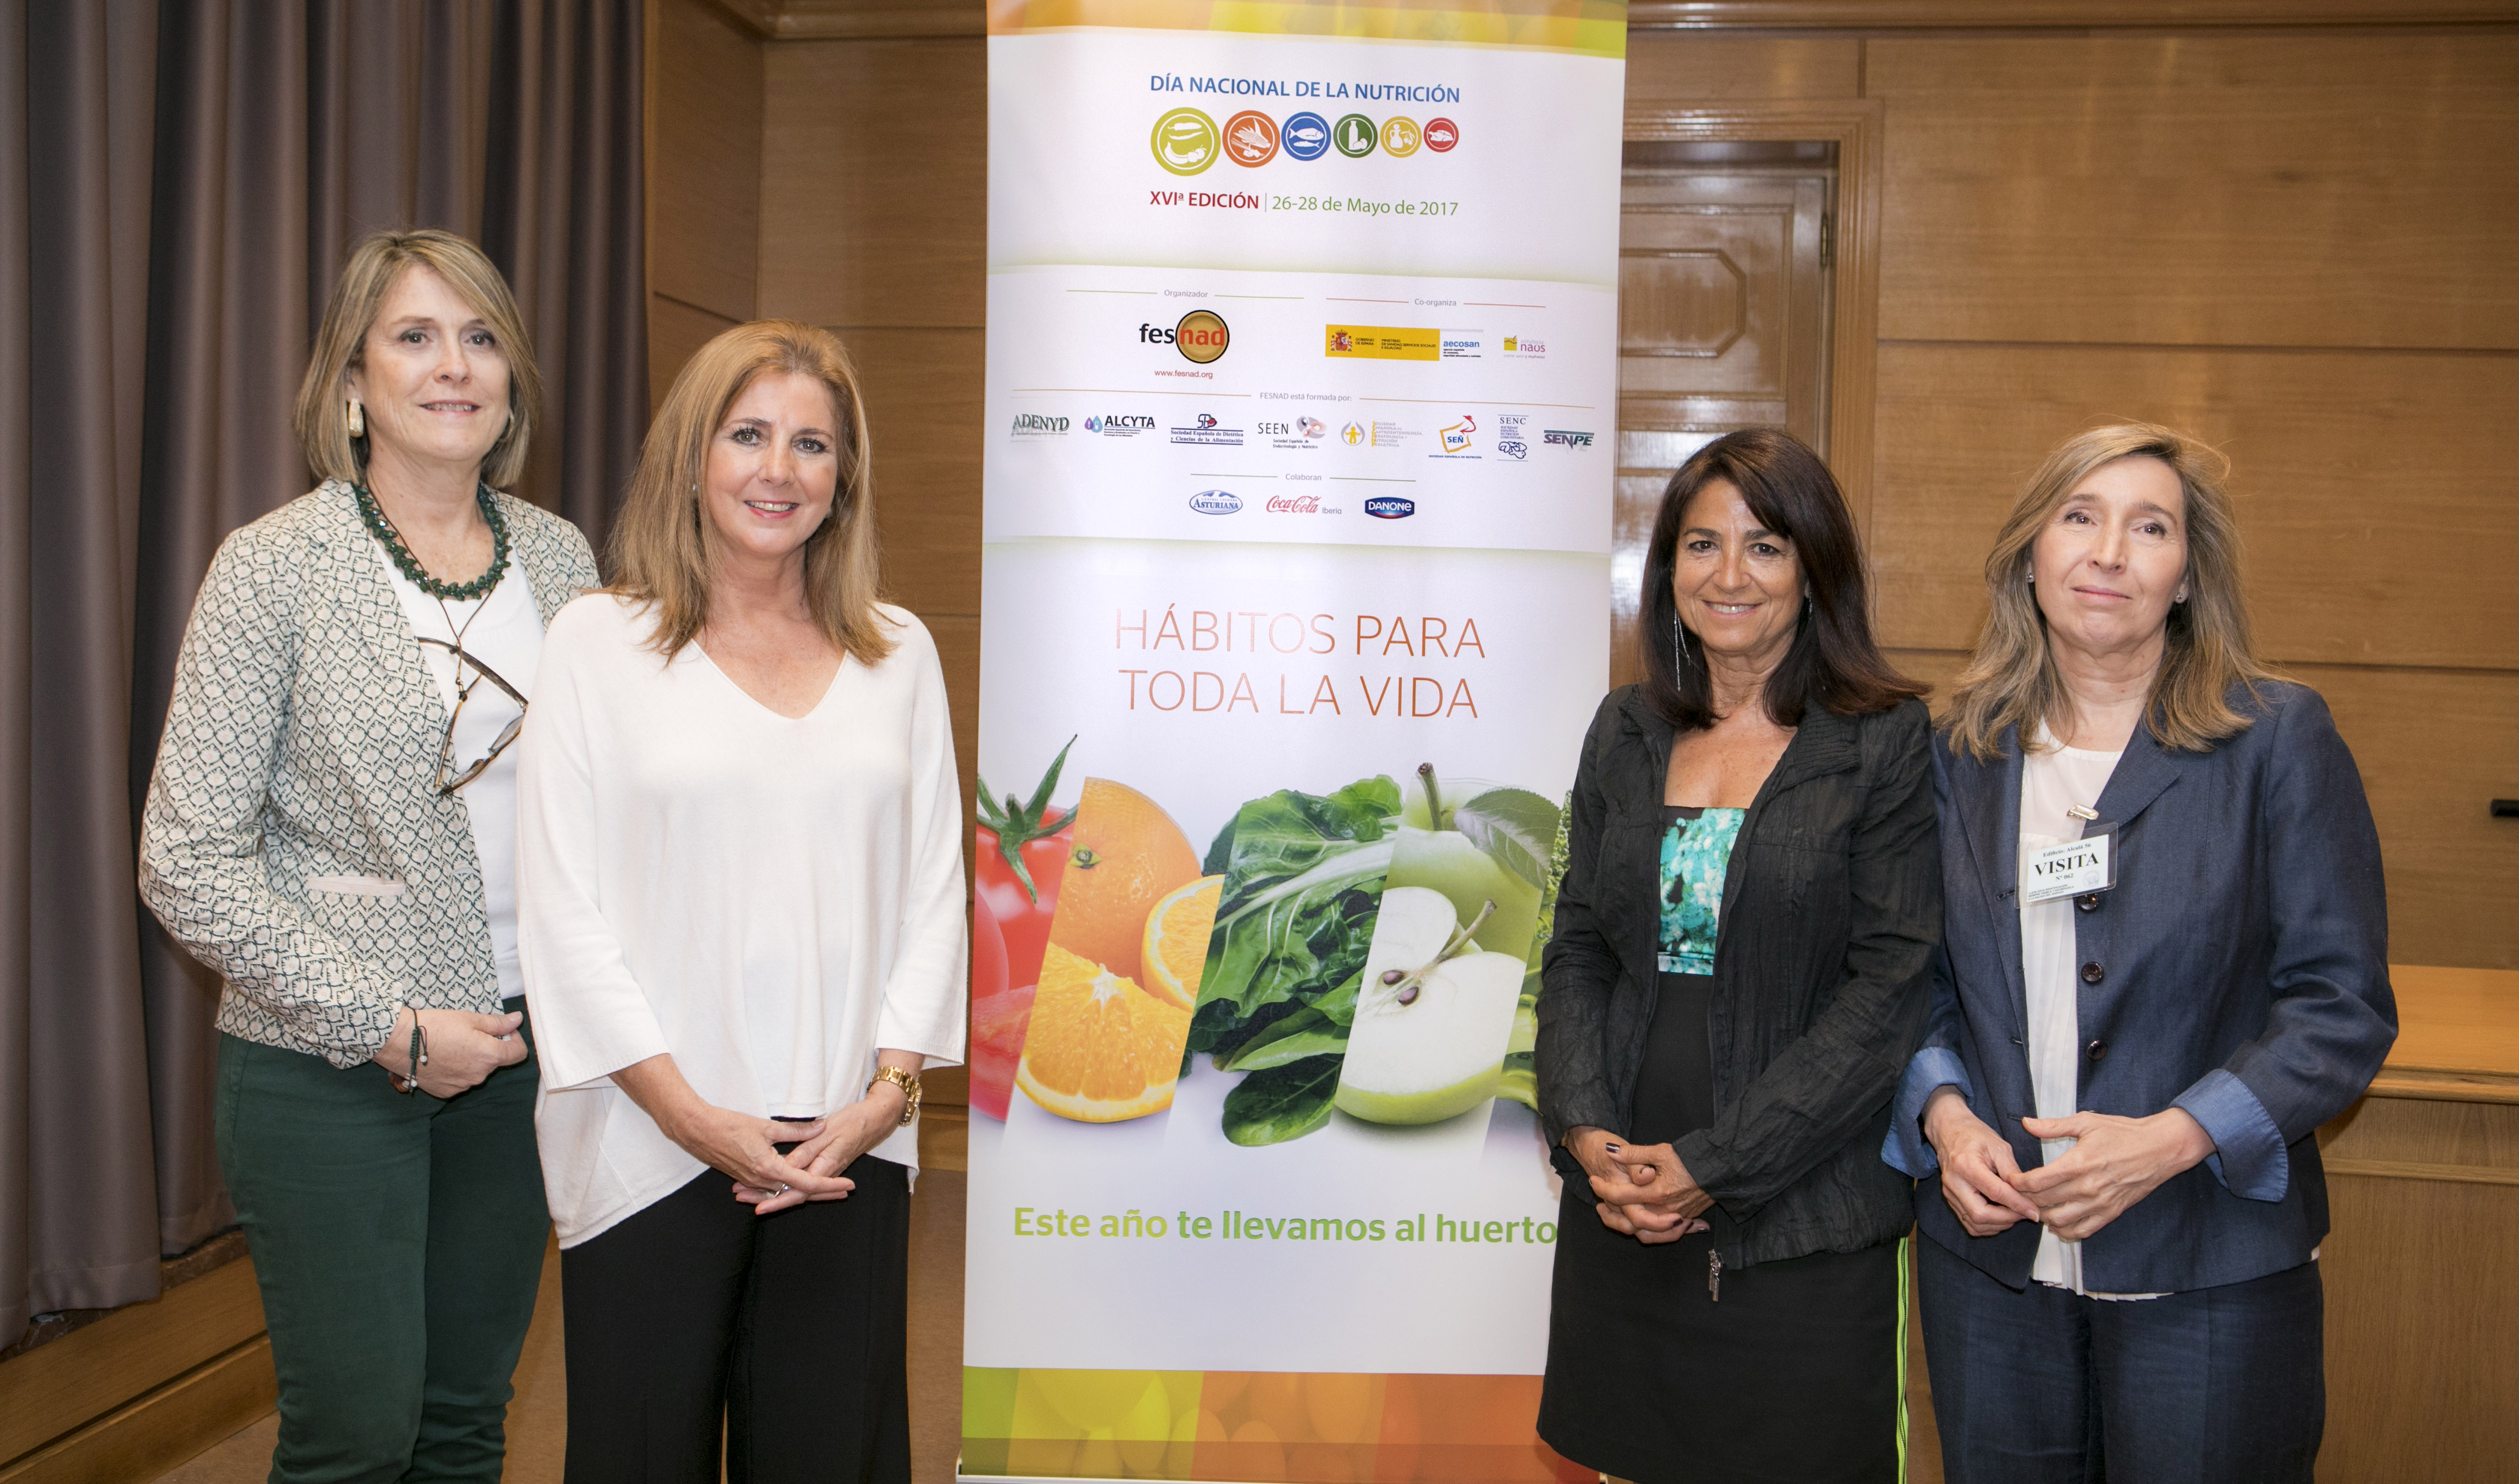 XVI edición del Día Nacional de la Nutrición promovido por FESNAD